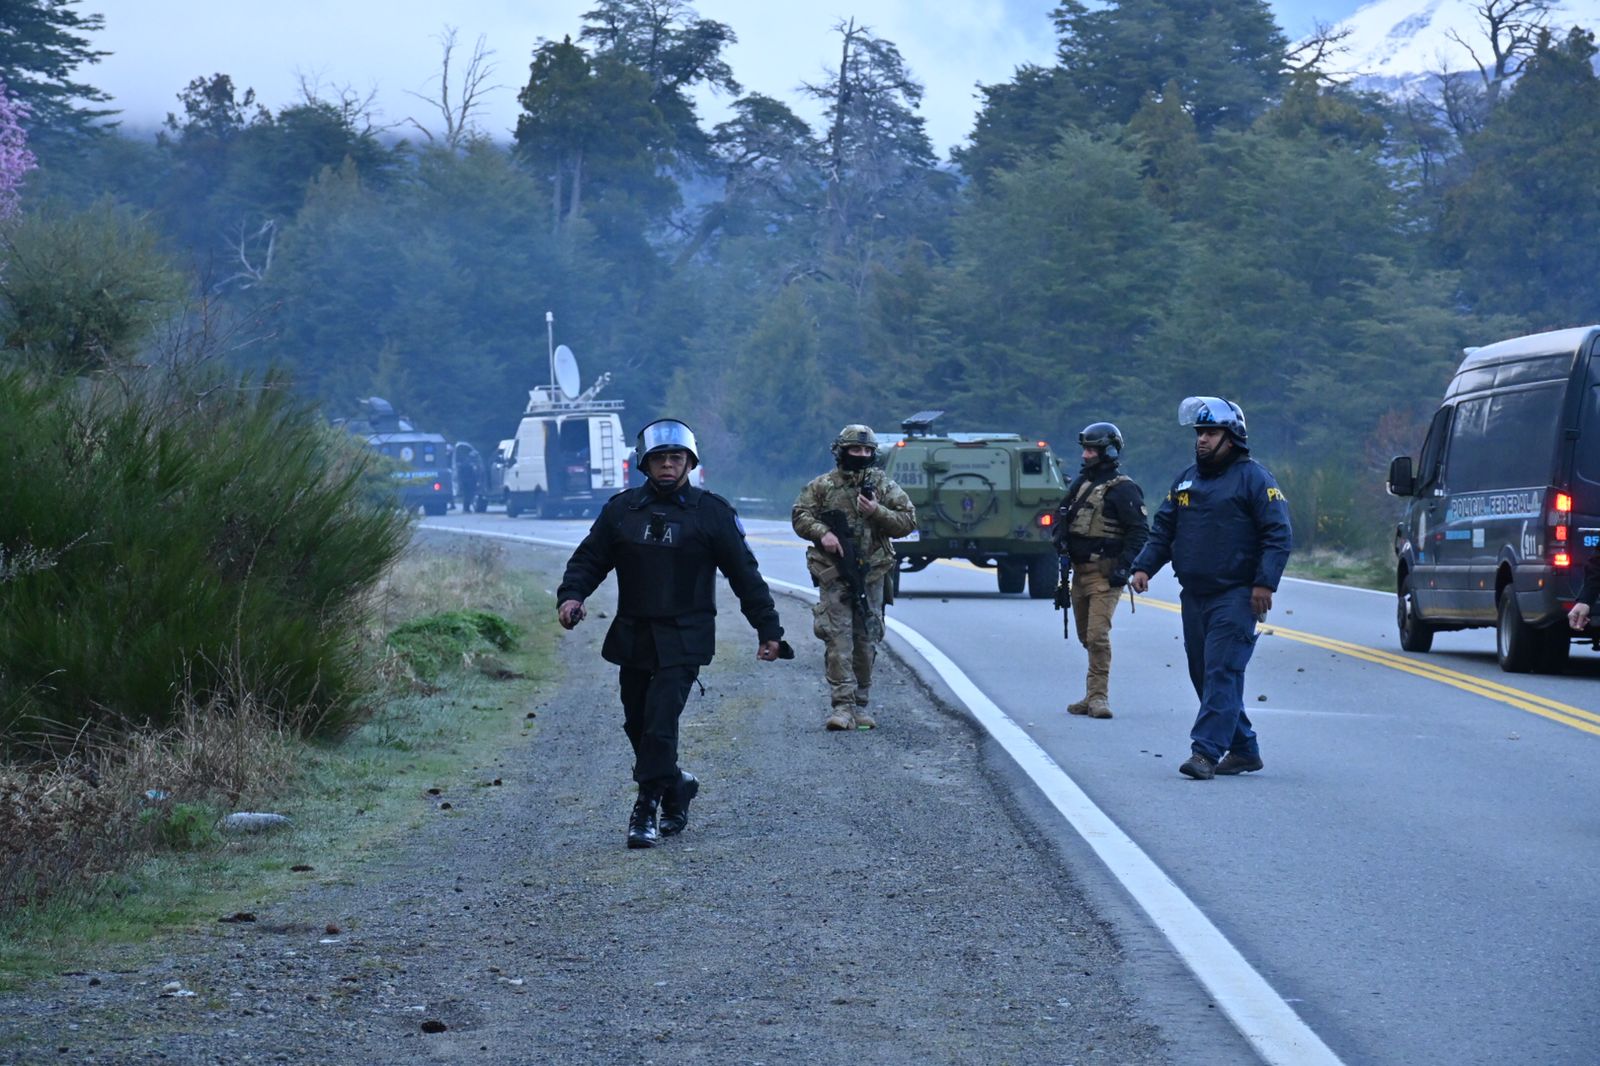 Fuerzas federales comenzaron el operativo de desalojo en Villa Mascardi antes de las 8 de la mañana. Foto: Chino Leiva